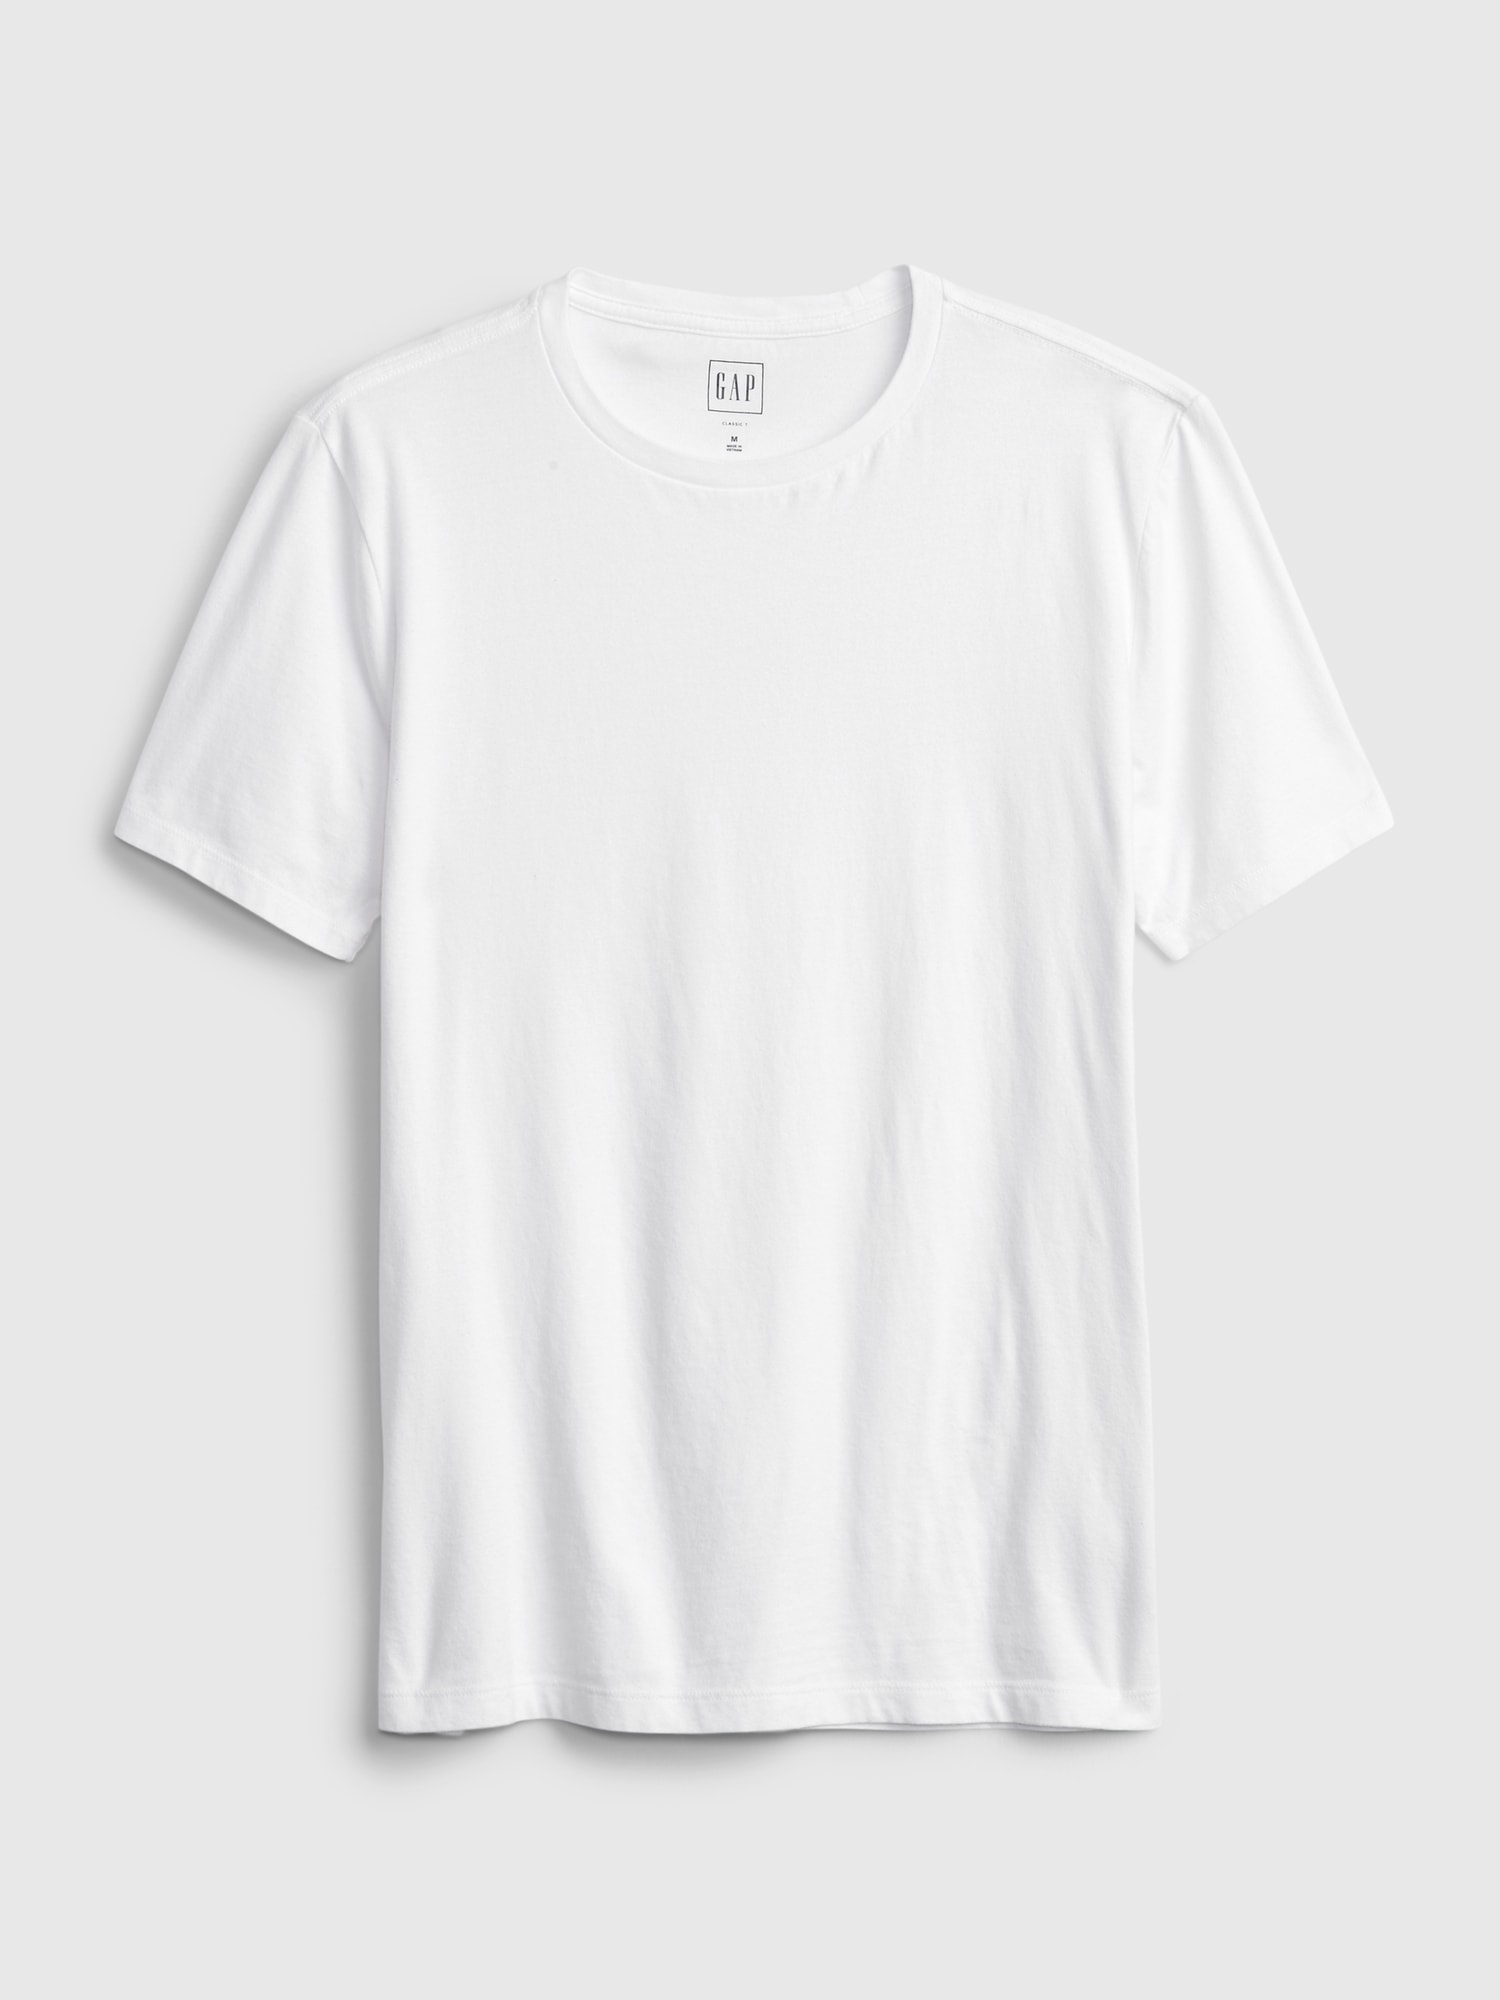 Cotton Four Squares Collar T Shirt, Size: M-XXL